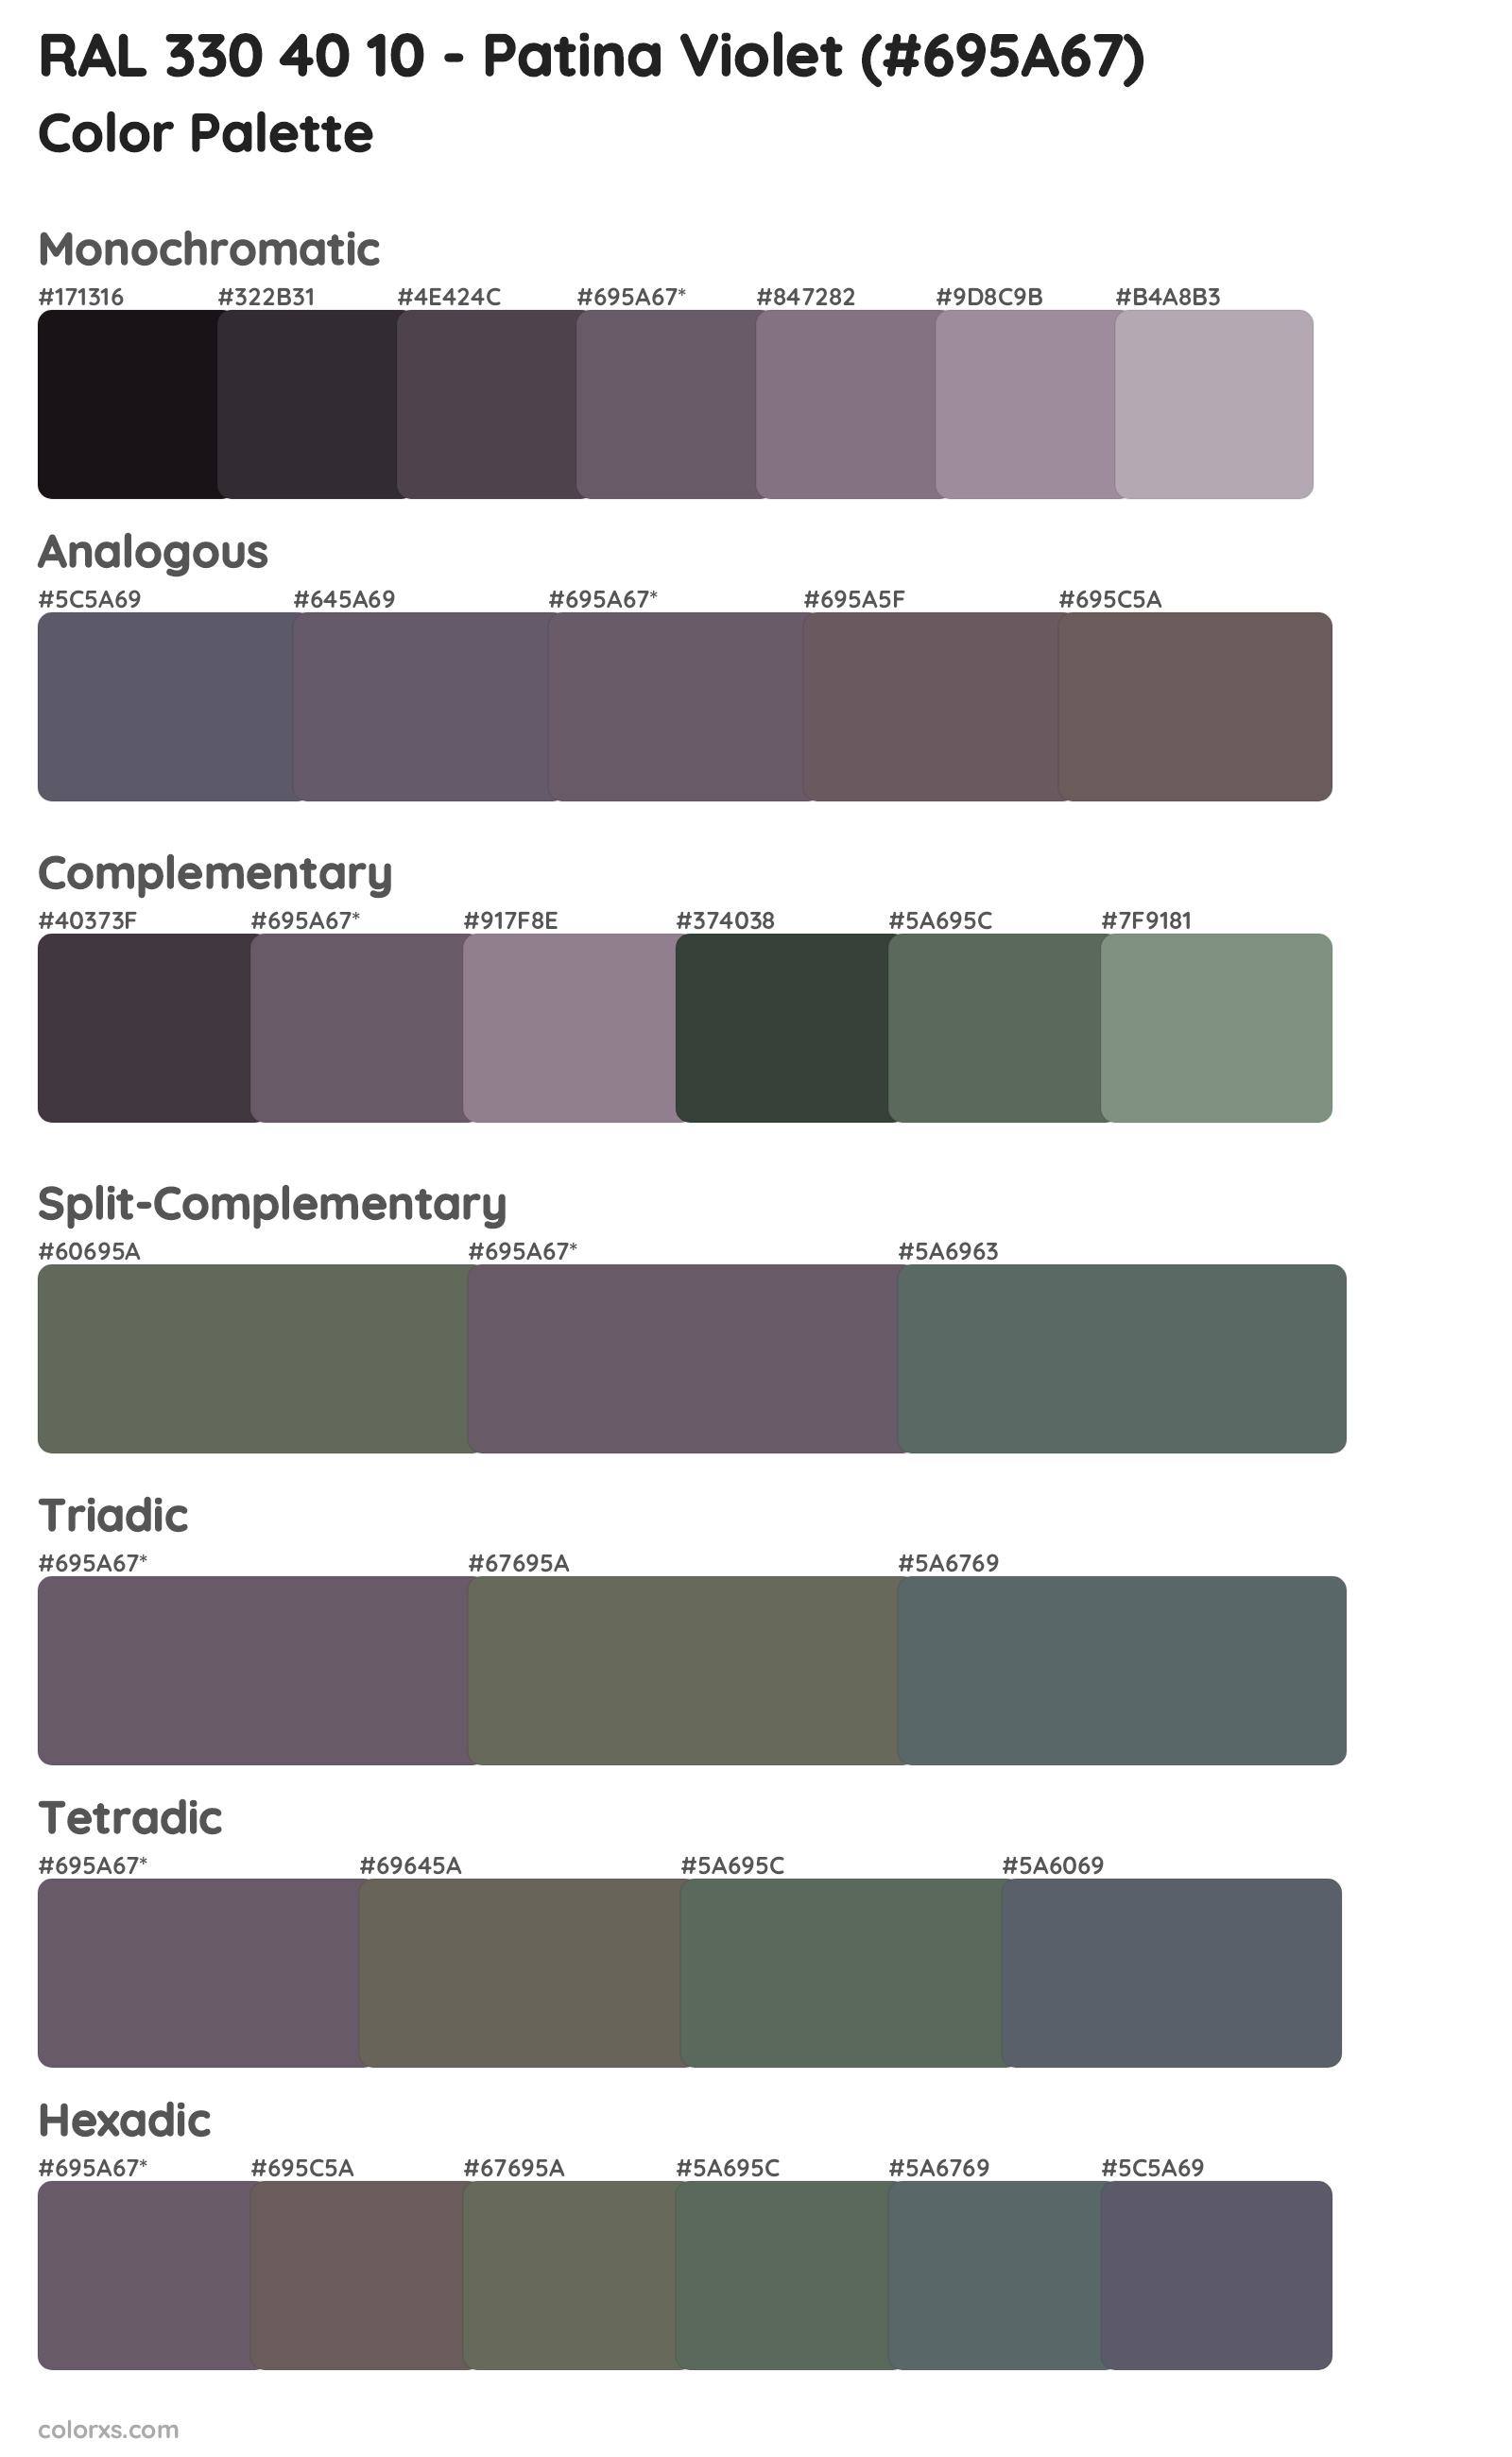 RAL 330 40 10 - Patina Violet Color Scheme Palettes